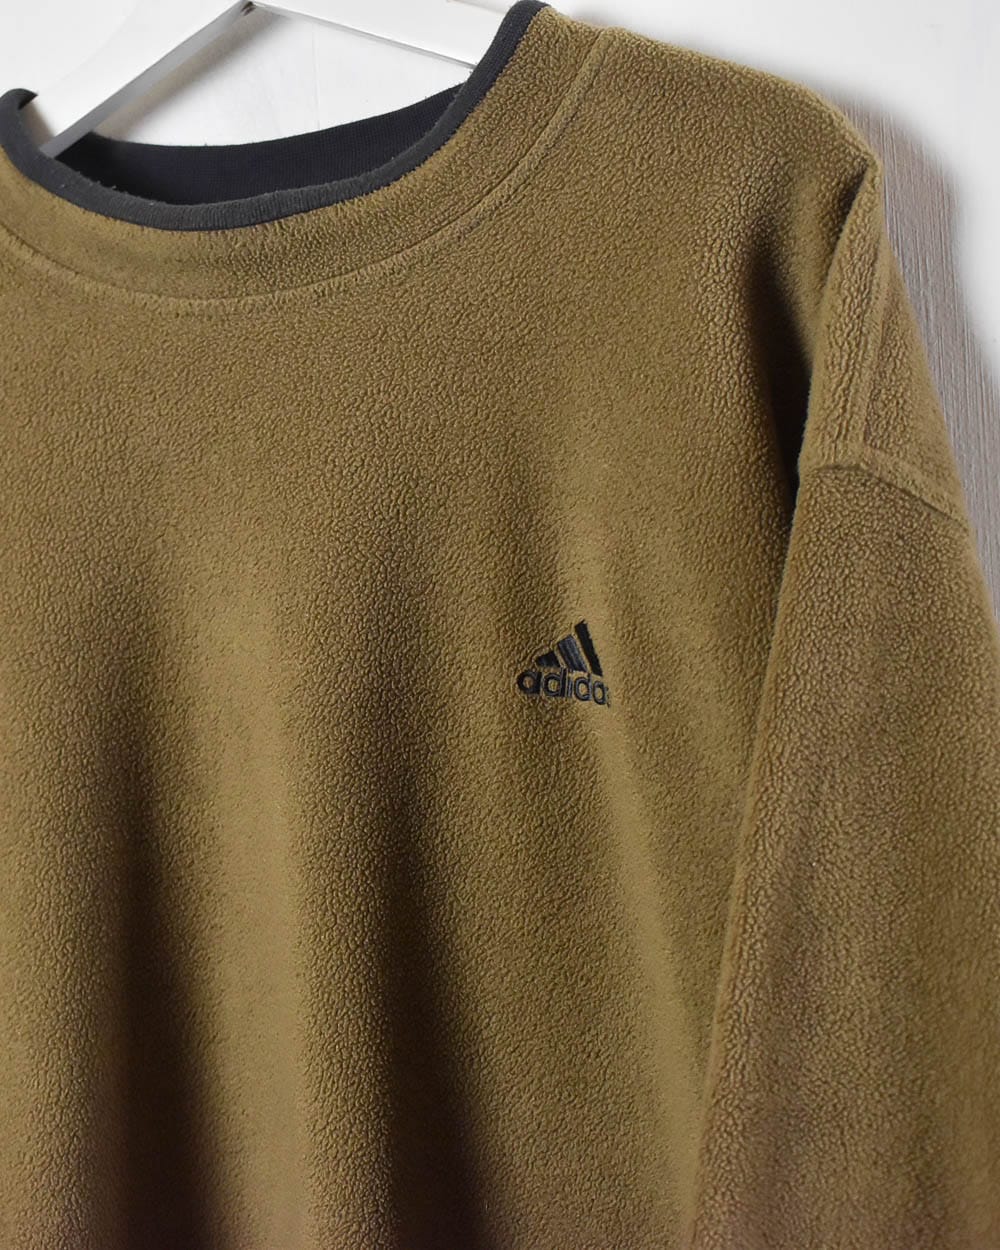 Khaki Adidas Mock Neck Fleece Sweatshirt - Large